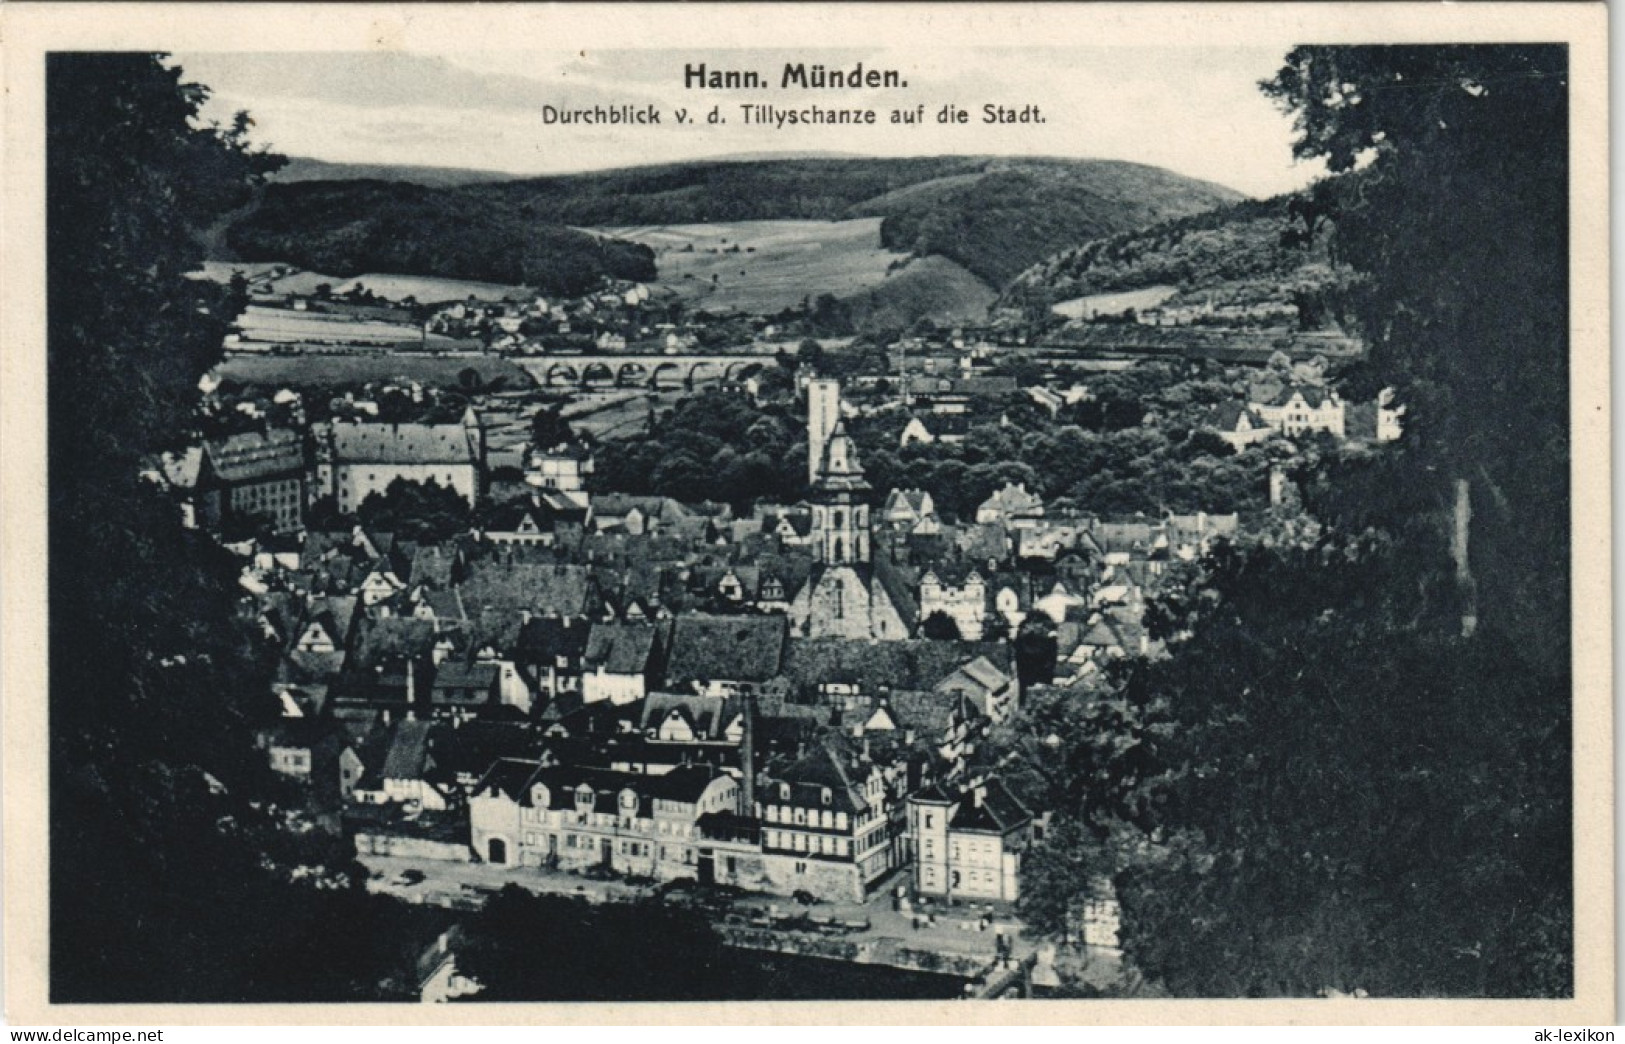 Hannoversch Münden Hann. Münden Durchblick V. D. Tillyschanze Die Stadt. 1925 - Hannoversch Münden